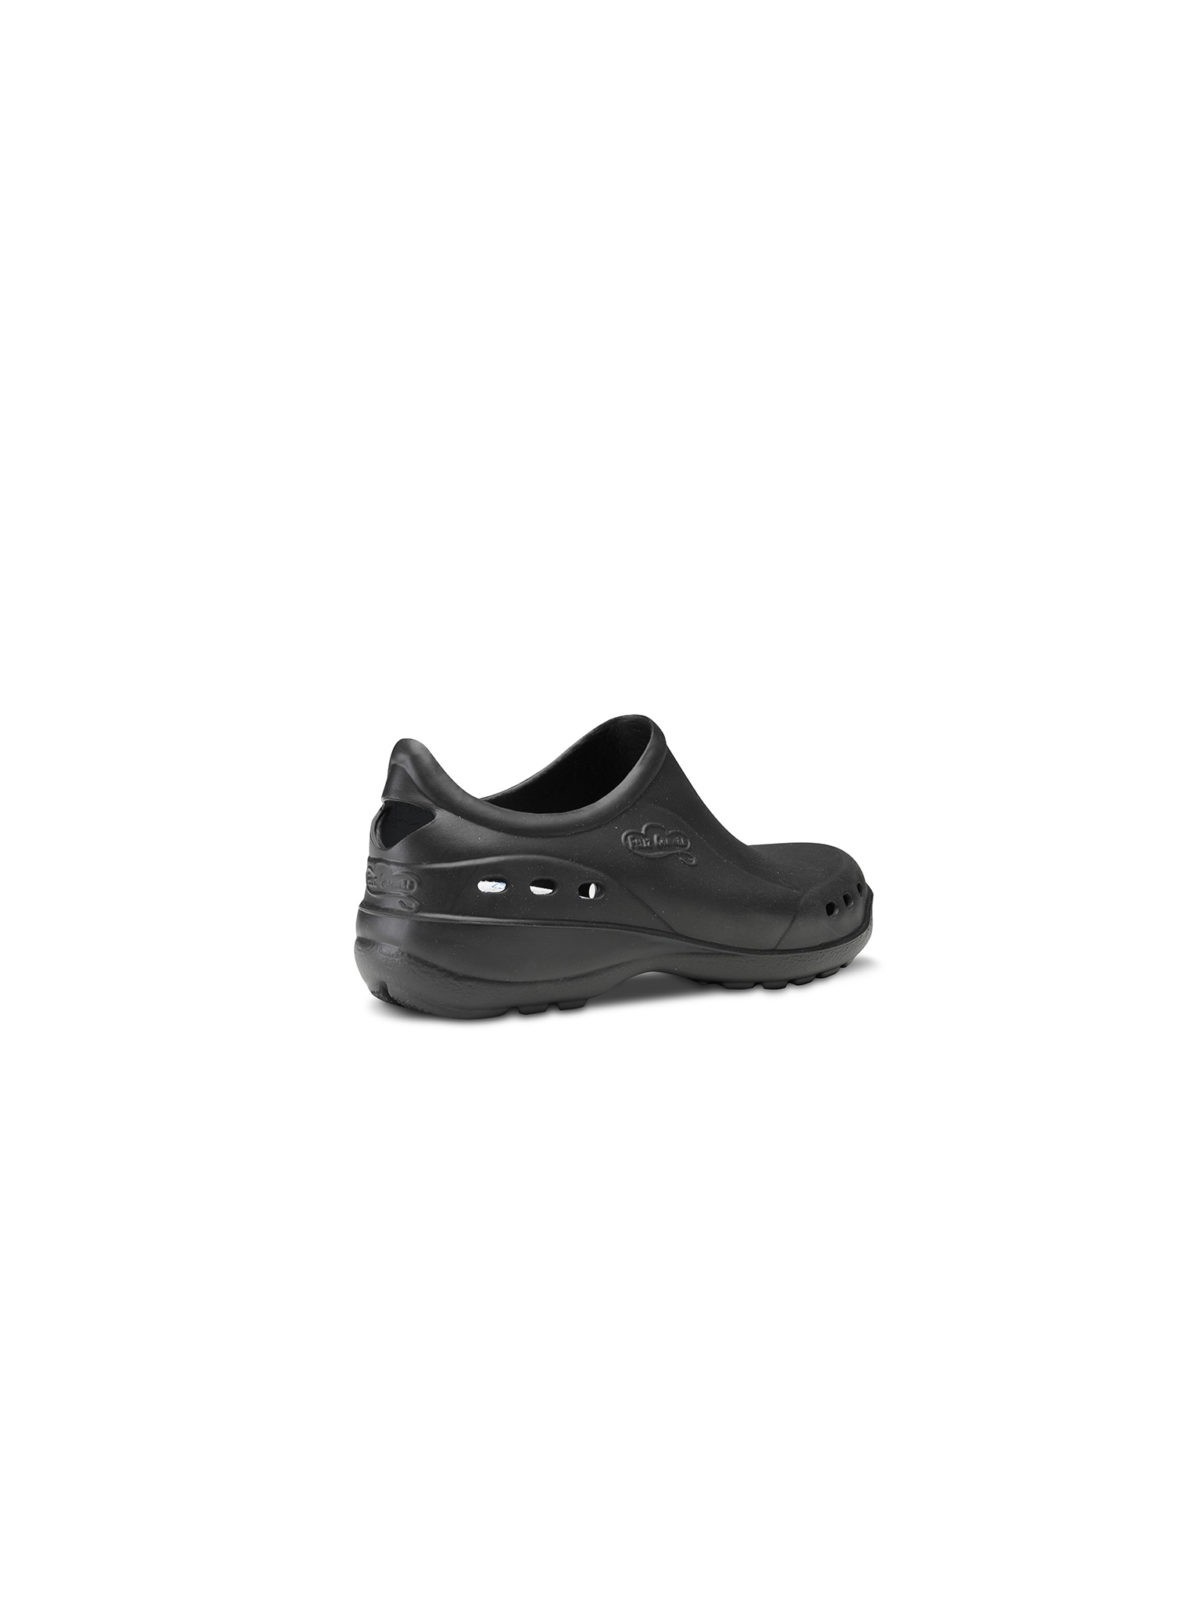 Flotante negro shoes